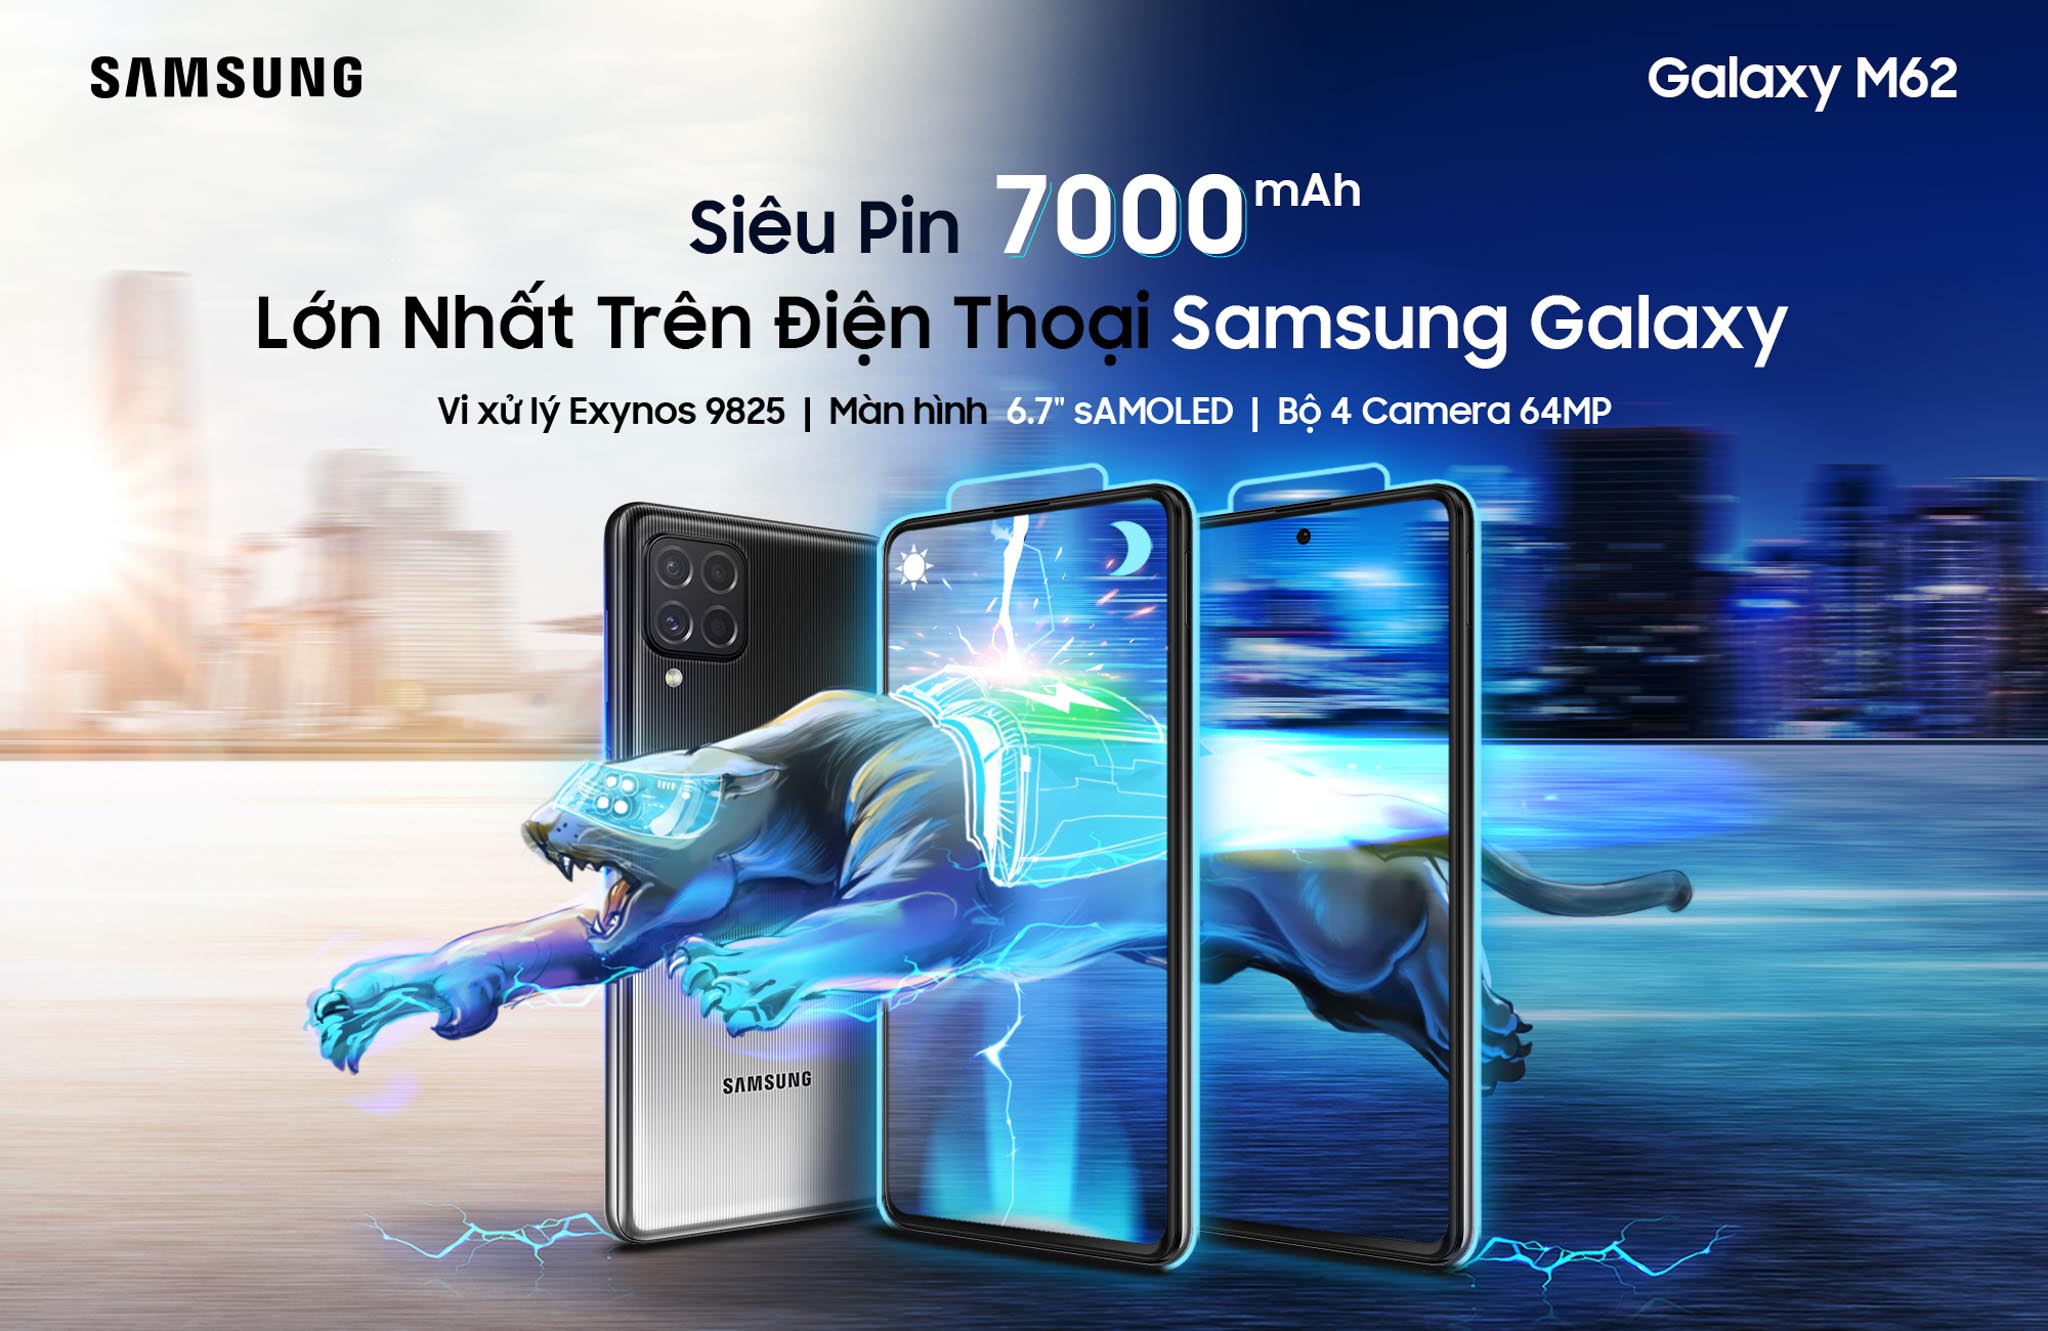 Samsung chính thức ra mắt Galaxy M62: Siêu pin “Mãnh thú” 7,000mAh lớn nhất trên điện thoại Samsung Galaxy